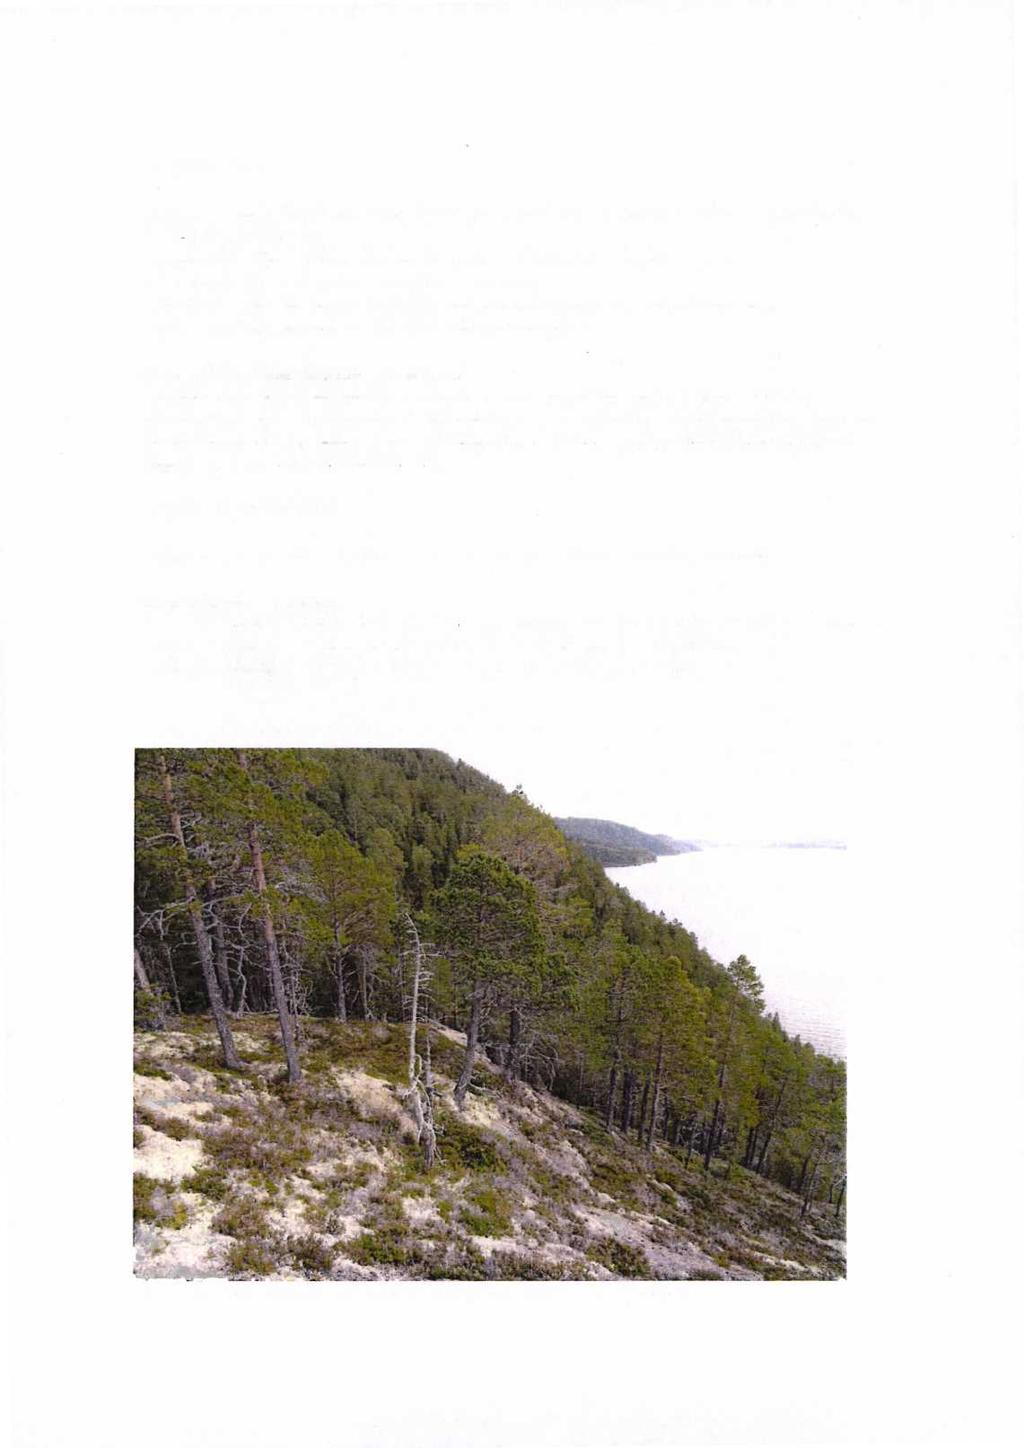 VERNEFORMÅL I forhold til naturmangfoldloven 37 om naturreservater, er følgende kriterier mest relevant for lokaliteten Storvika: Inneholder truet, sjelden eller sårbar natur: Rødlistearter av